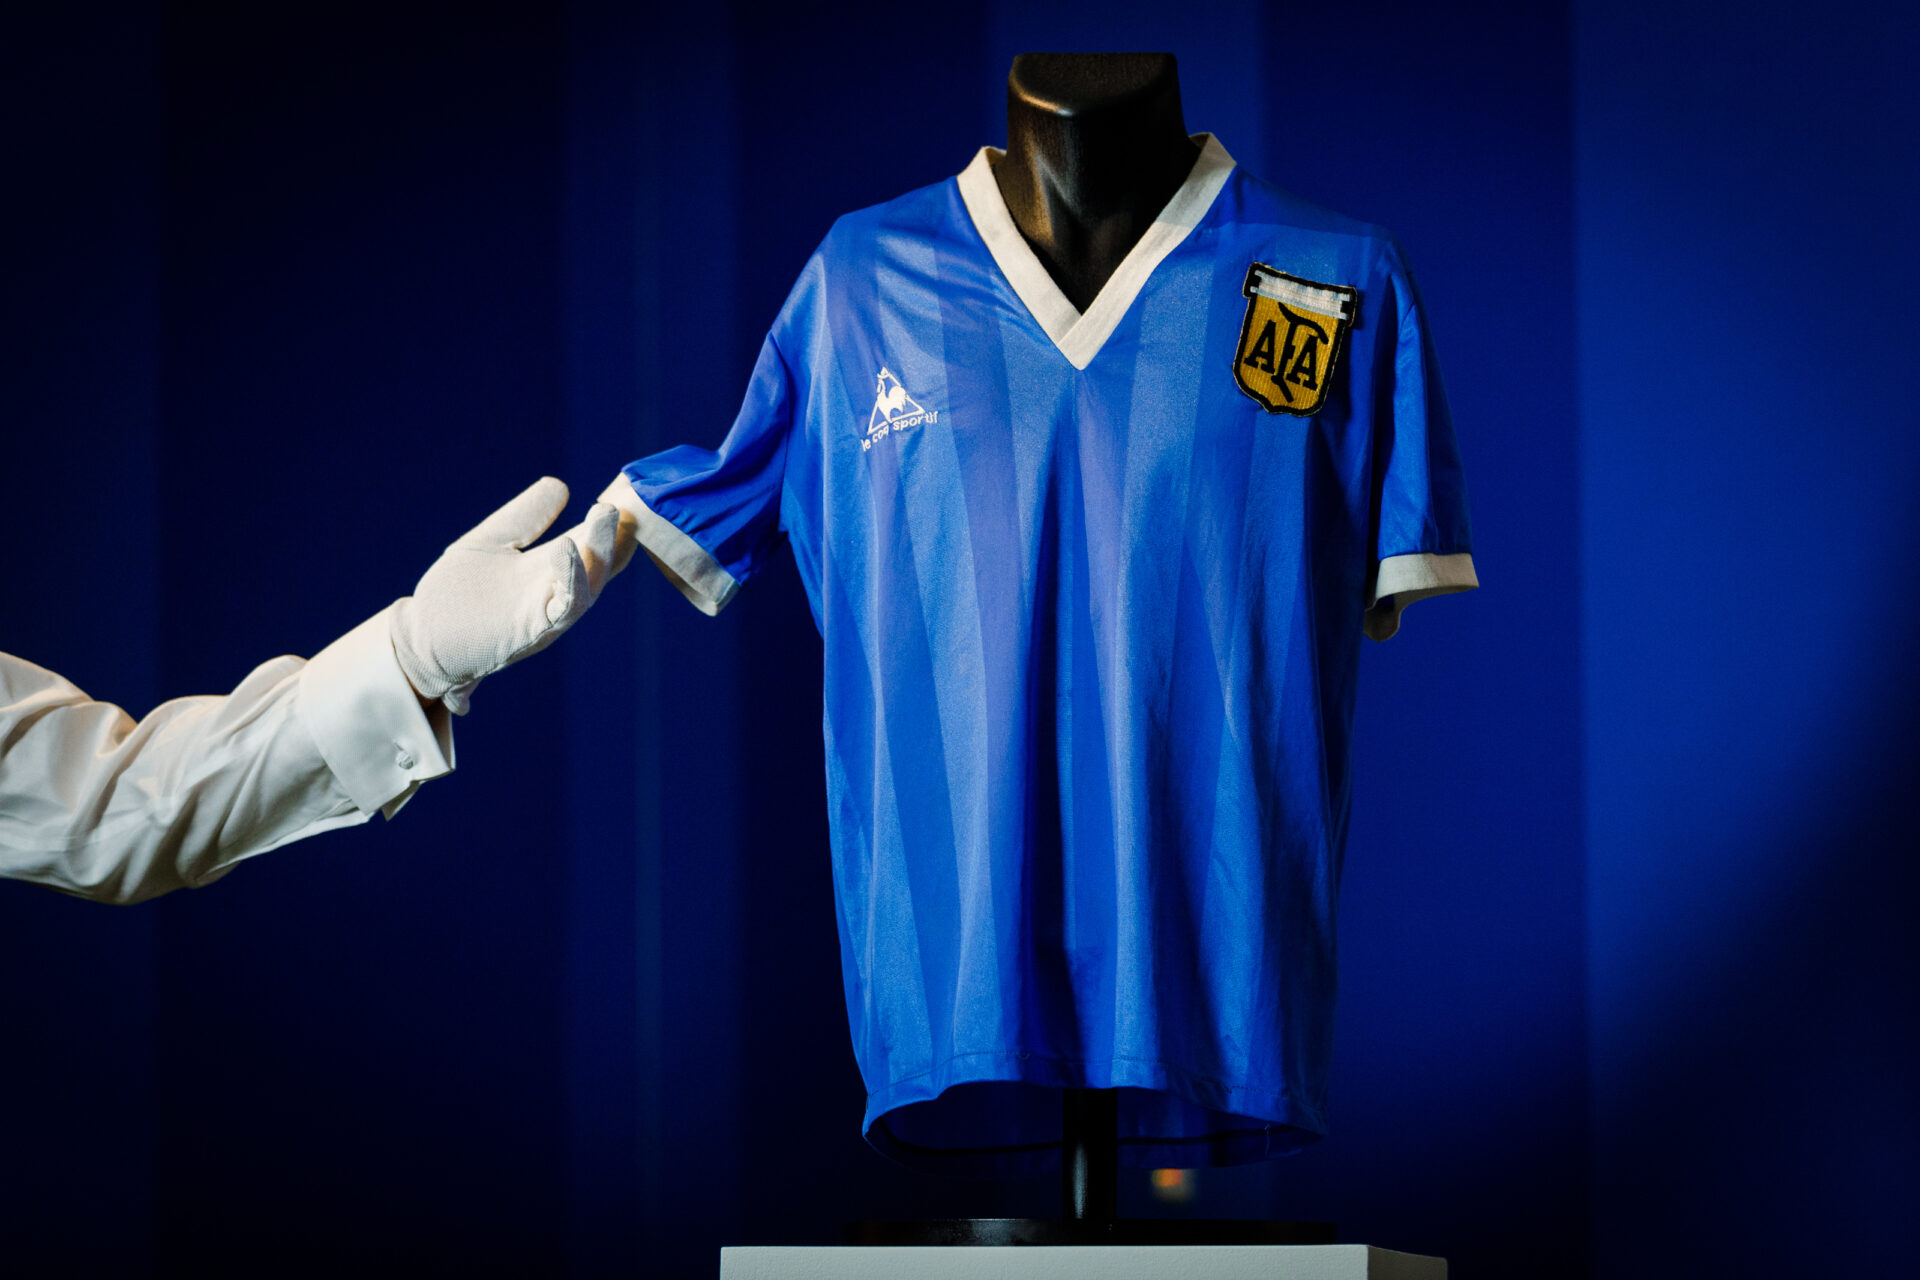 Camisa de Maradona na Copa de 86 é comprada por R$ 46,4 mi e bate recorde